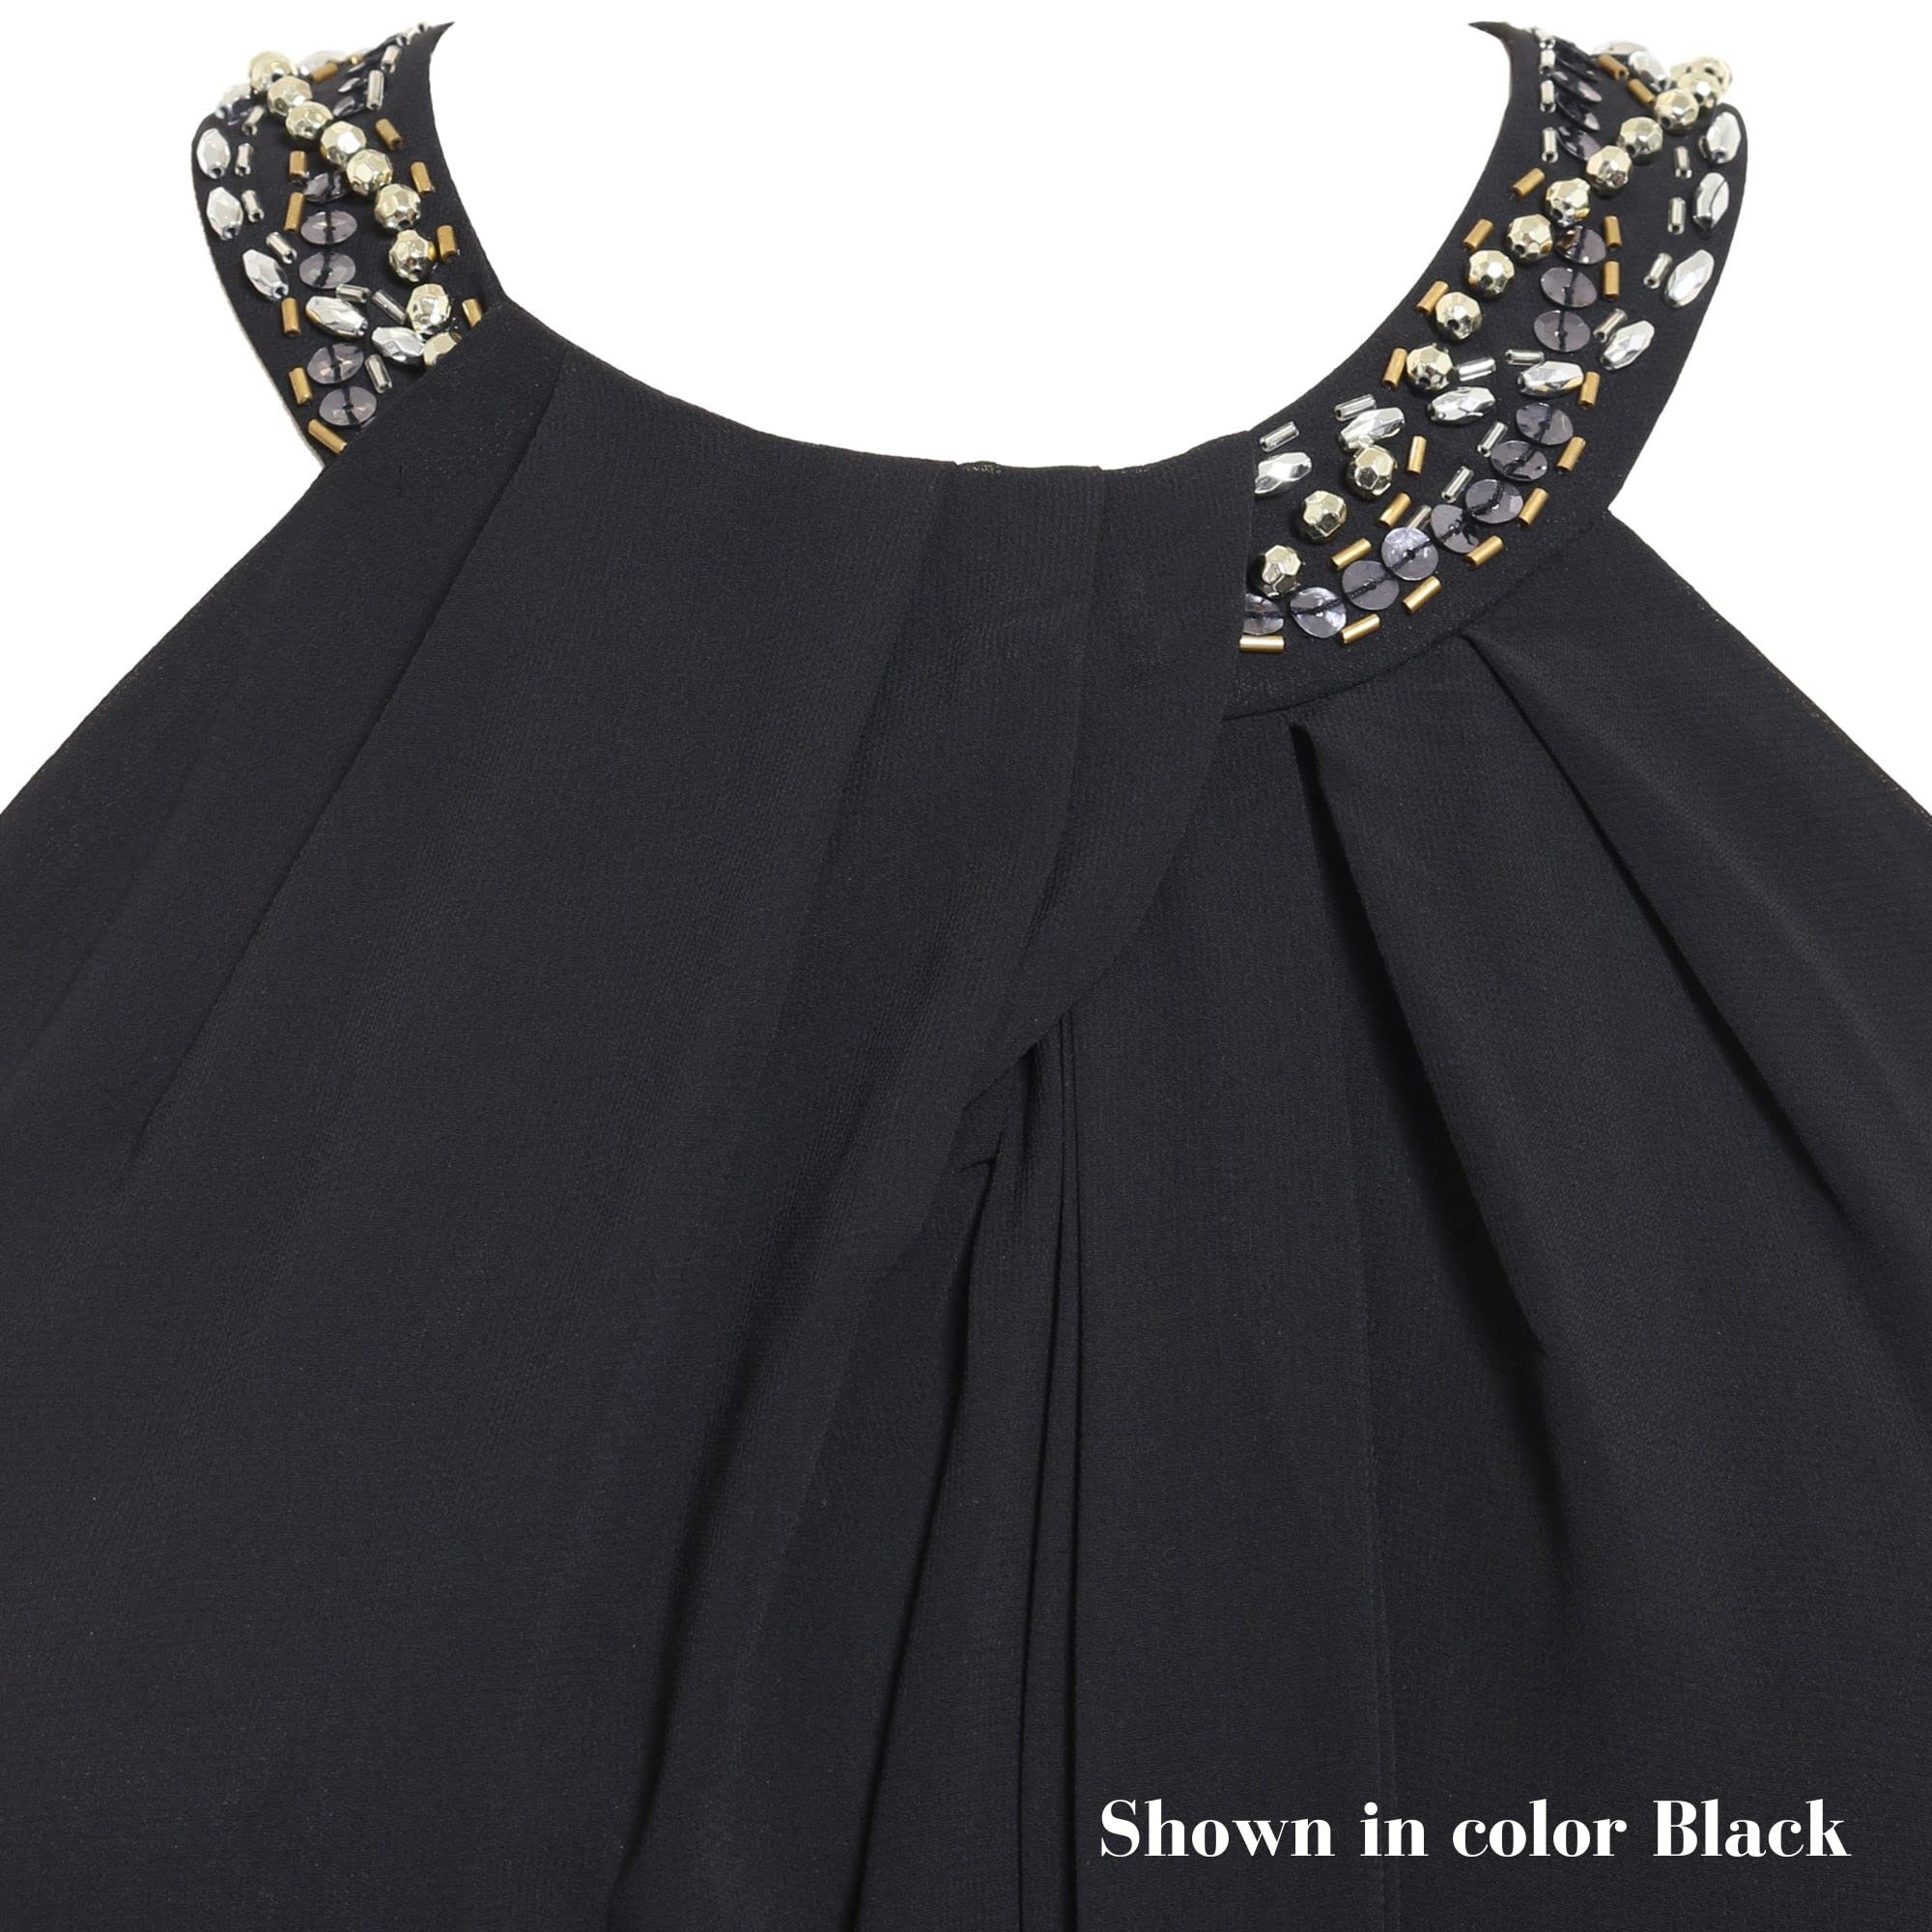 S.L. Fashions Women's Jewel Neck Halter Dress